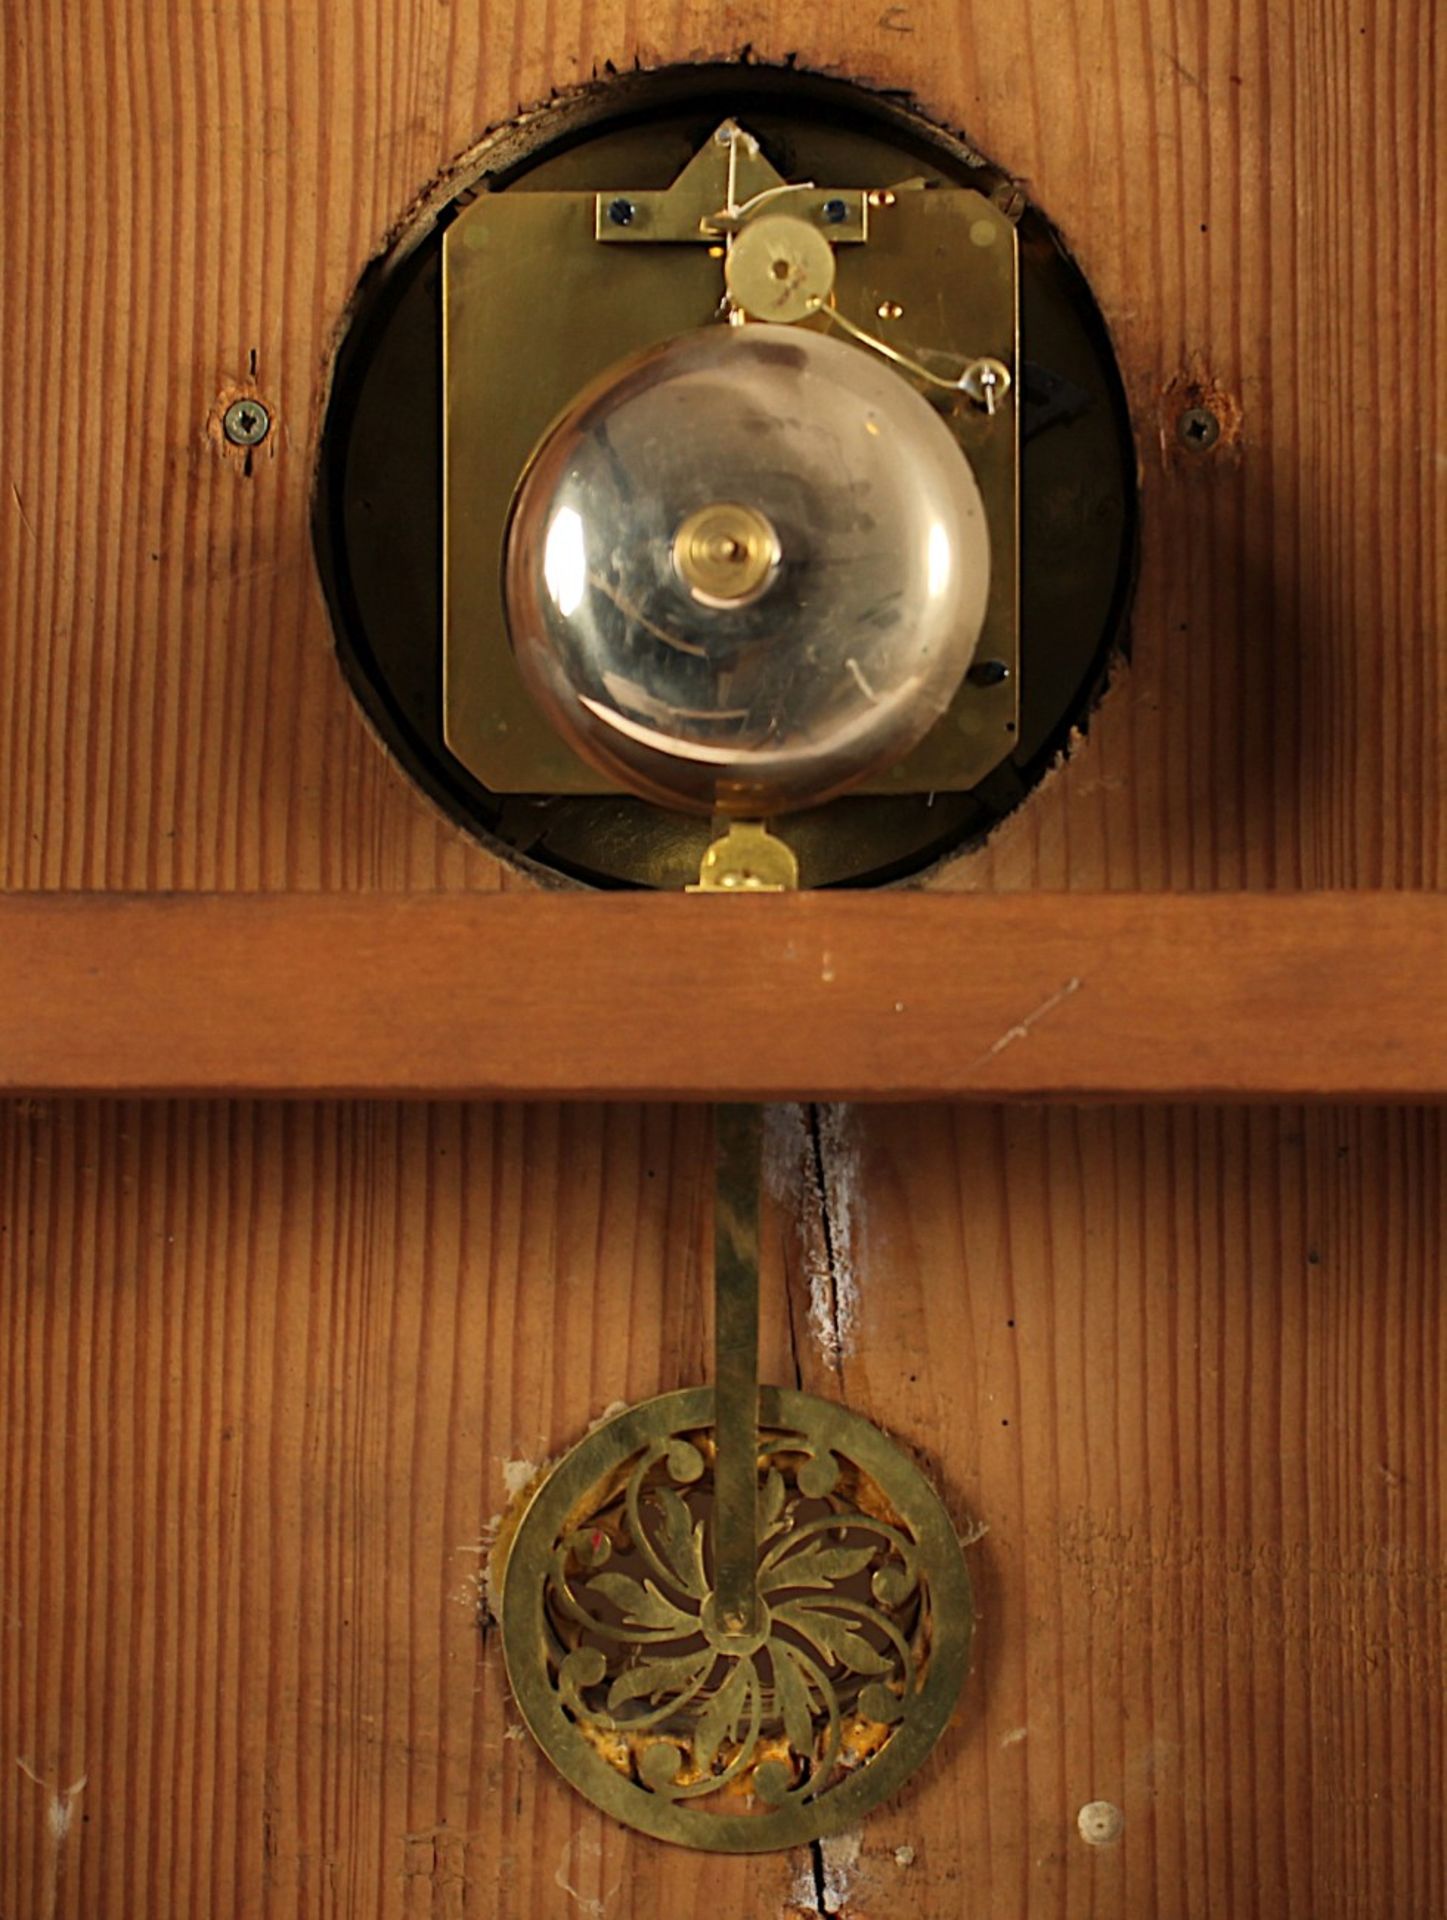 WIENER RAHMENUHR, Holz, goldfarben gefasst, rest., Werk mit Fadenaufhängung und Schlag auf Glocke, - Bild 3 aus 4